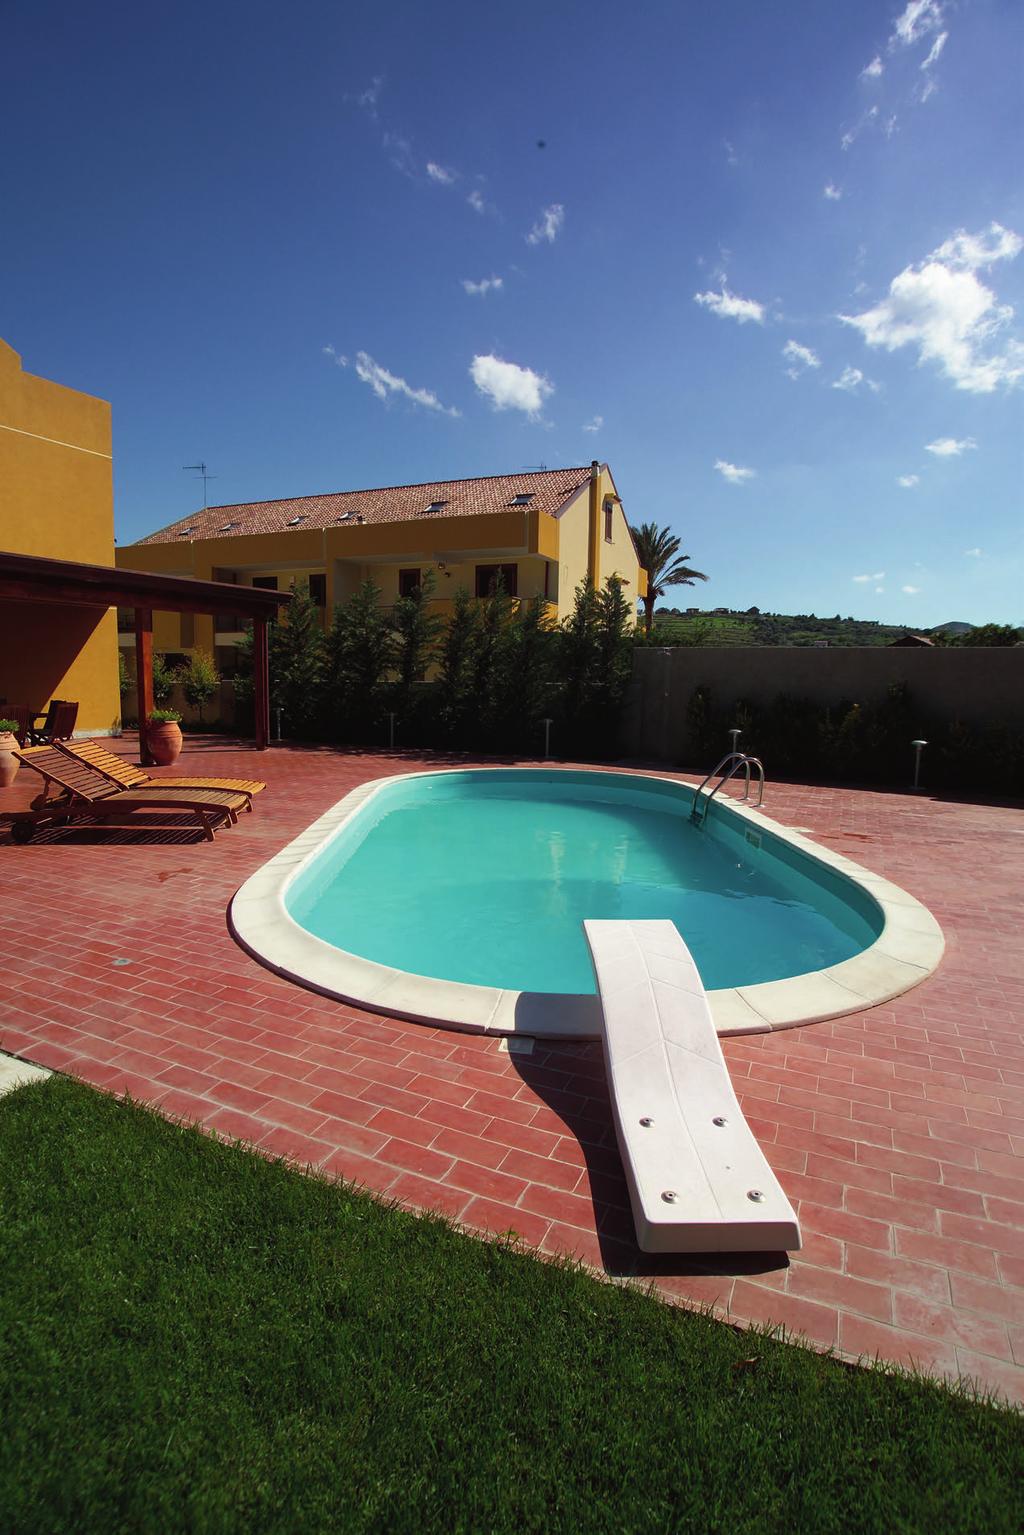 Guida Trampolini Pool s Delfino Trampolino adatto a piscine residenziali